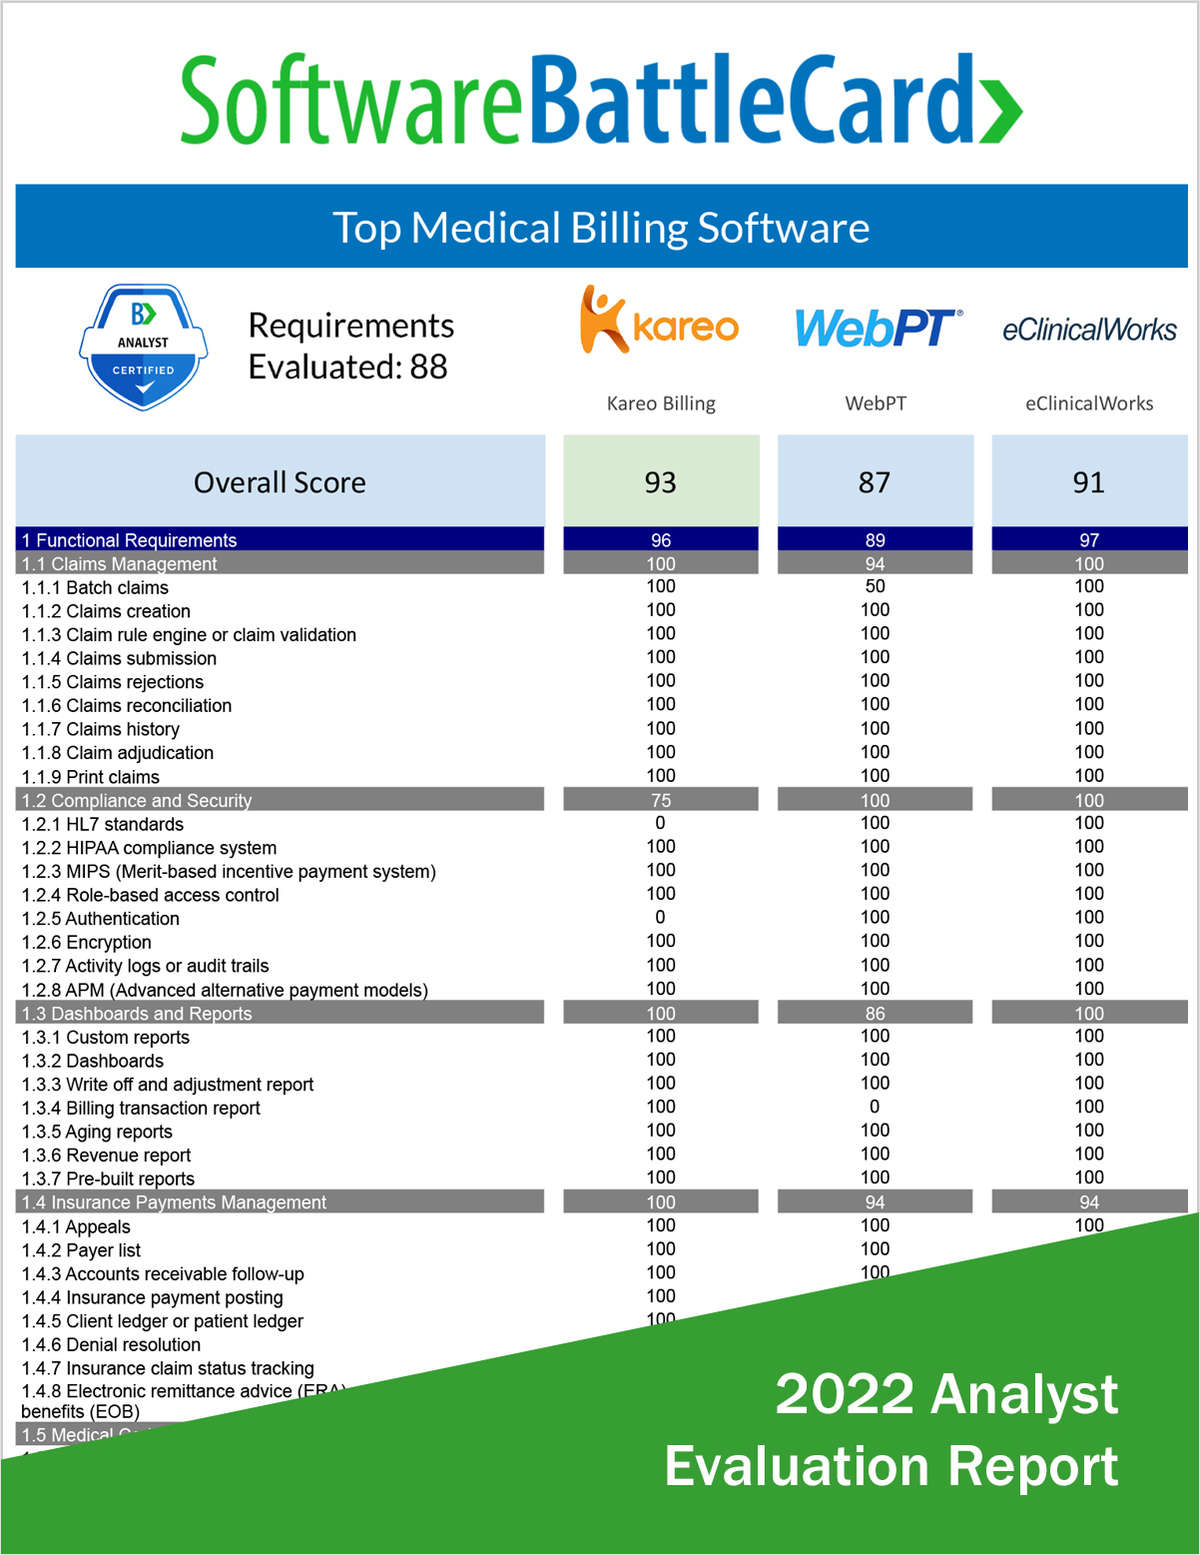 Top Medical Billing Software BattleCard--Kareo Billing vs. WebPT vs. eClinicalWorks